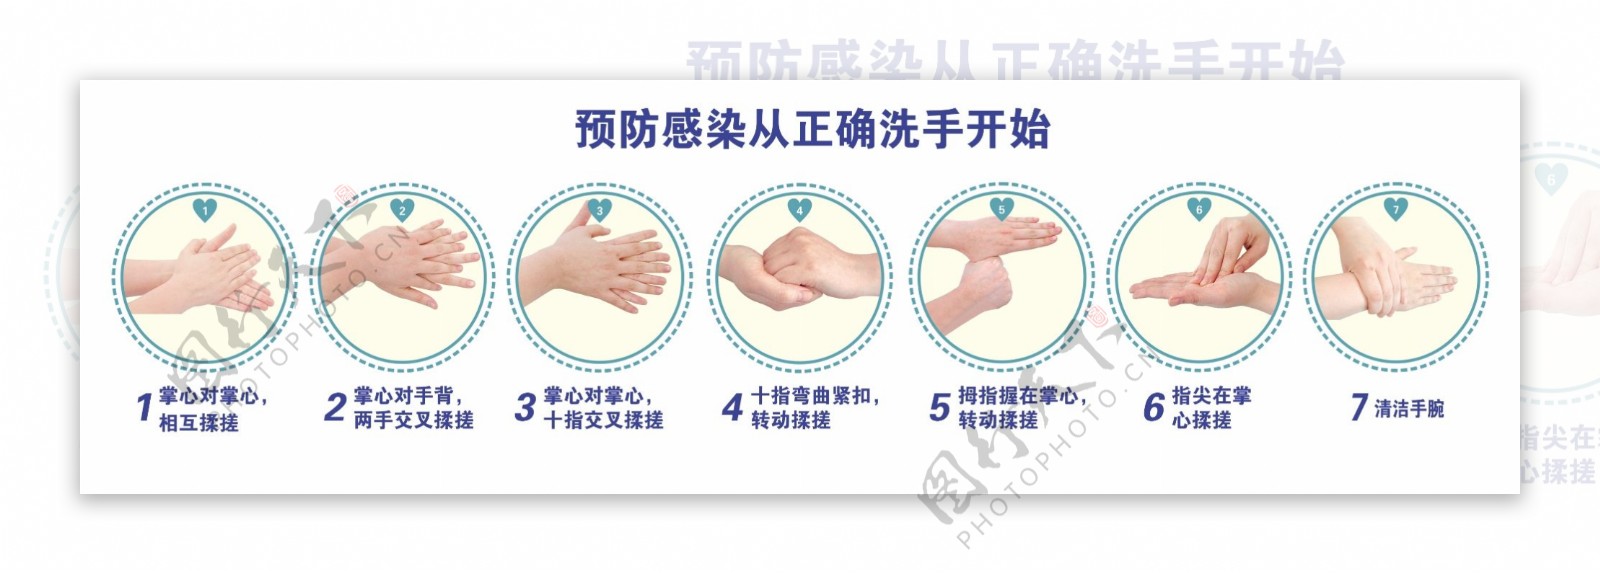 预防感染从正确洗手开始